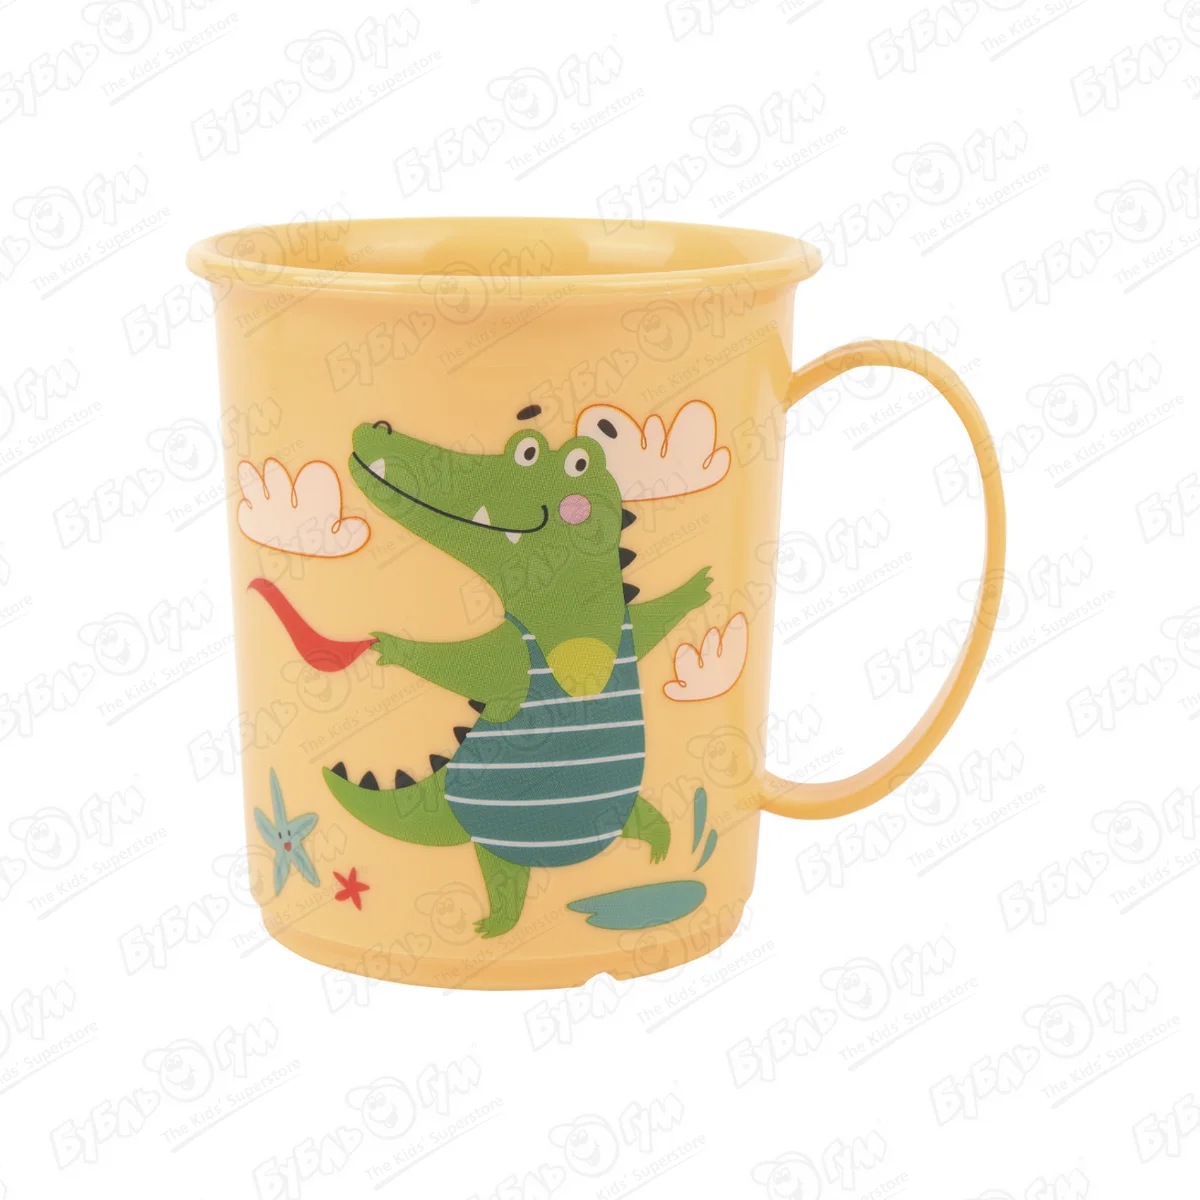 Кружка Пластишка с рисунком Крокодил оранжевая 180мл